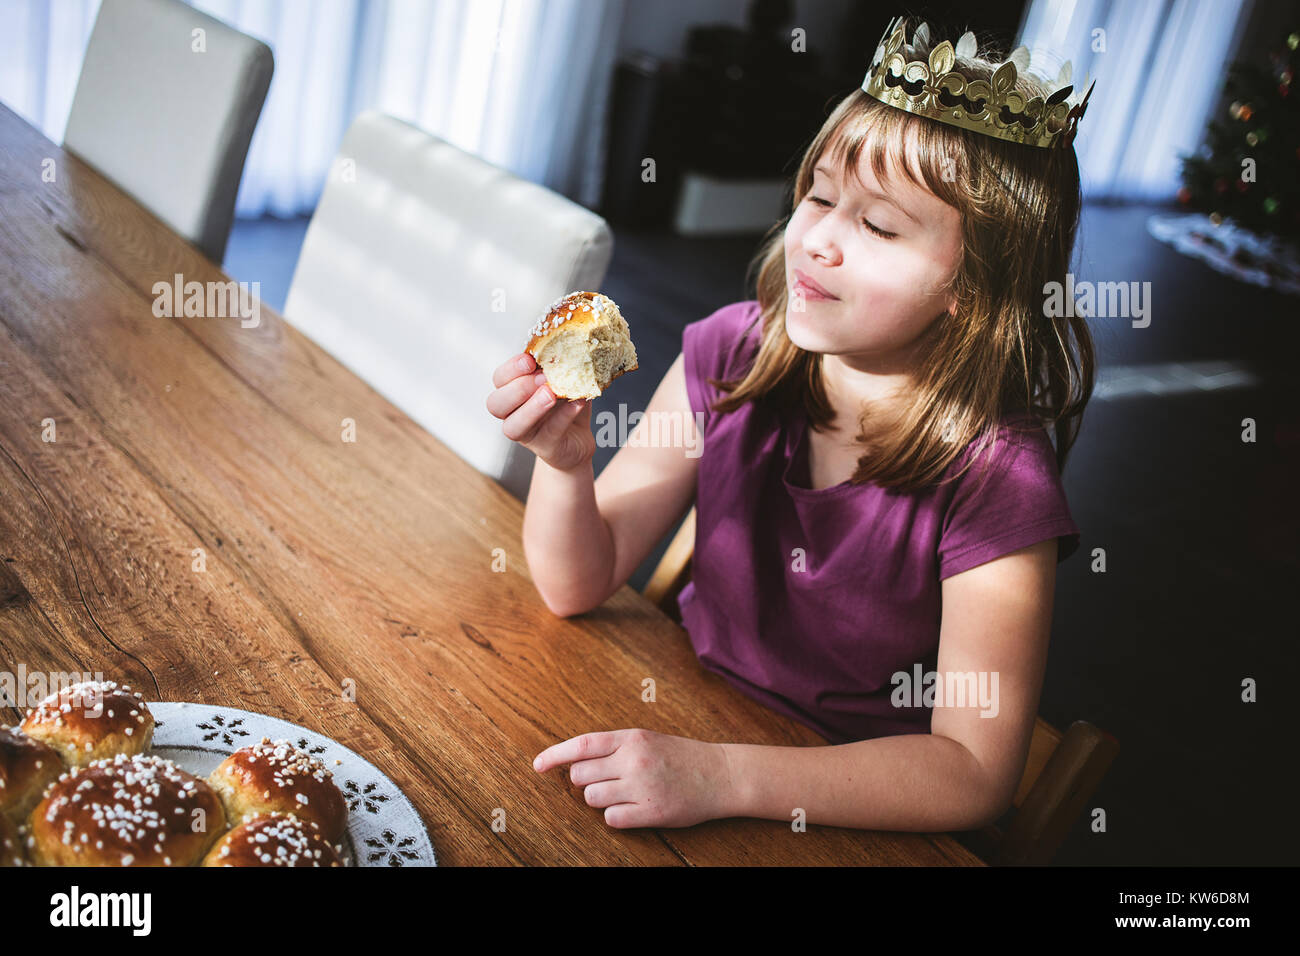 Schweizer süßes Brot mit einem goldenen Papier Krone und versteckten  Miniatur des Königs gebackenes traditionell in der Schweiz für drei Könige  Tag am 6 Stockfotografie - Alamy